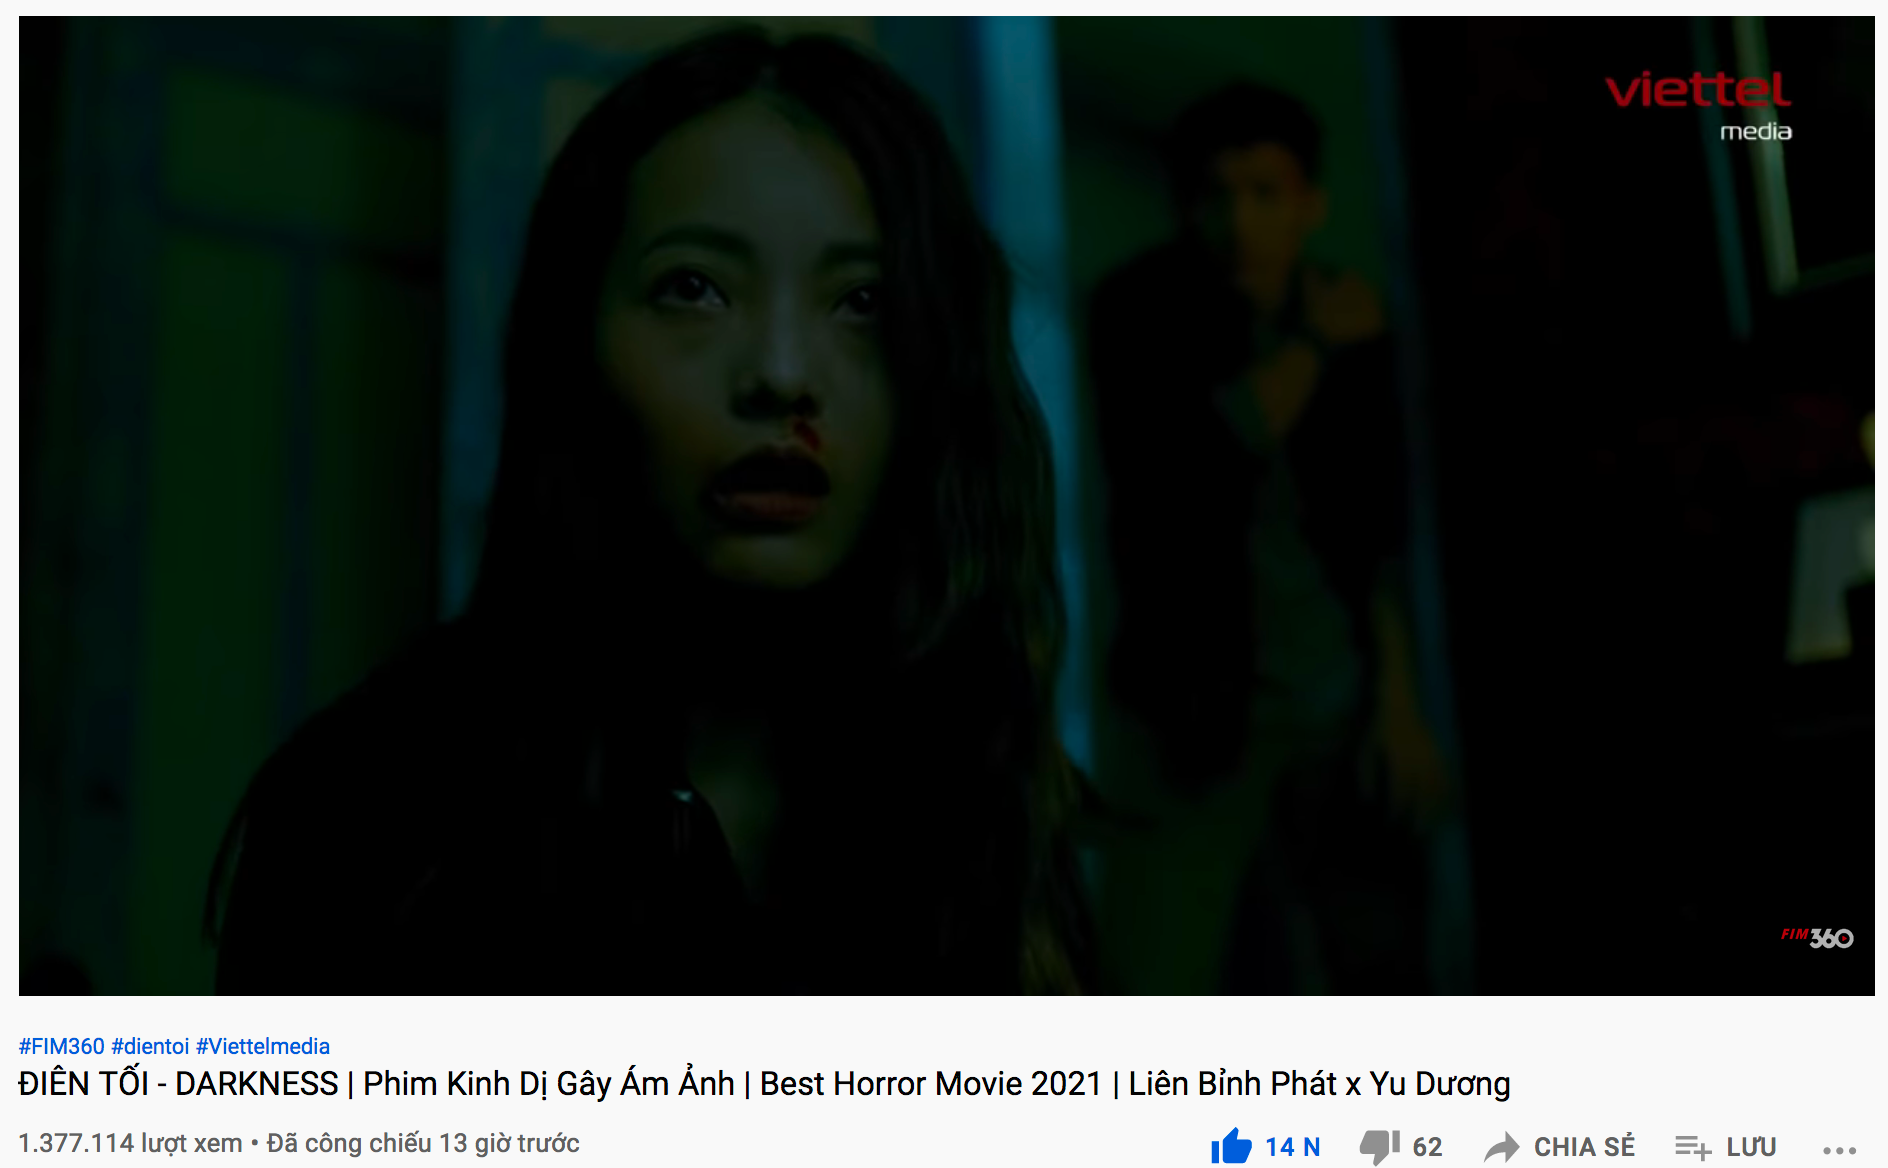 Vừa ra mắt, phim kinh dị của Yu Dương và Liên Bỉnh Phát đã đạt 2 triệu lượt xem - Ảnh 1.